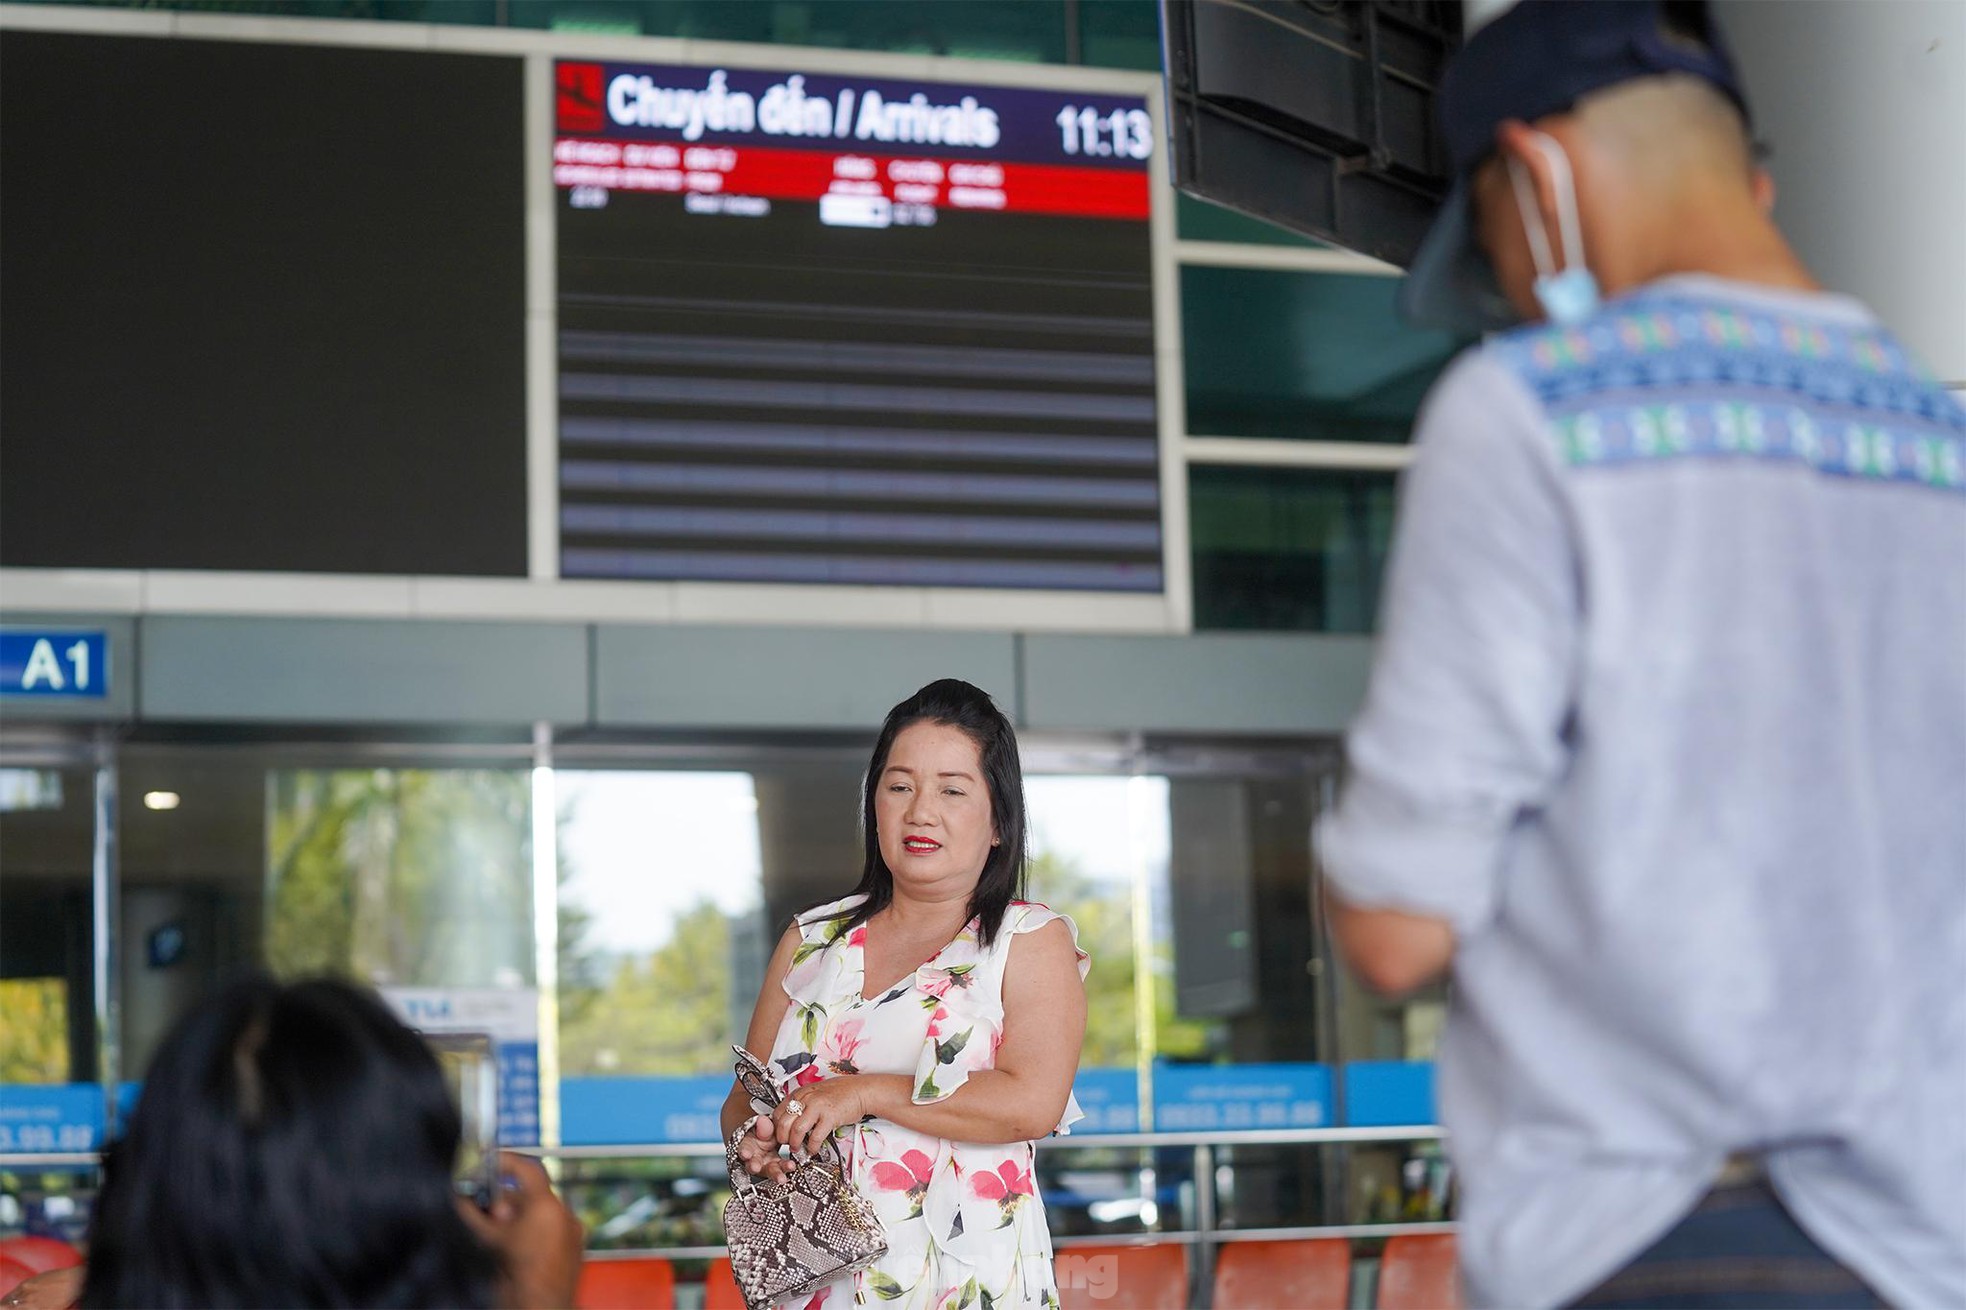 Vỡ òa cảm xúc tại sân bay Tân Sơn Nhất trong ngày đầu mở lại đường bay quốc tế - Ảnh 11.